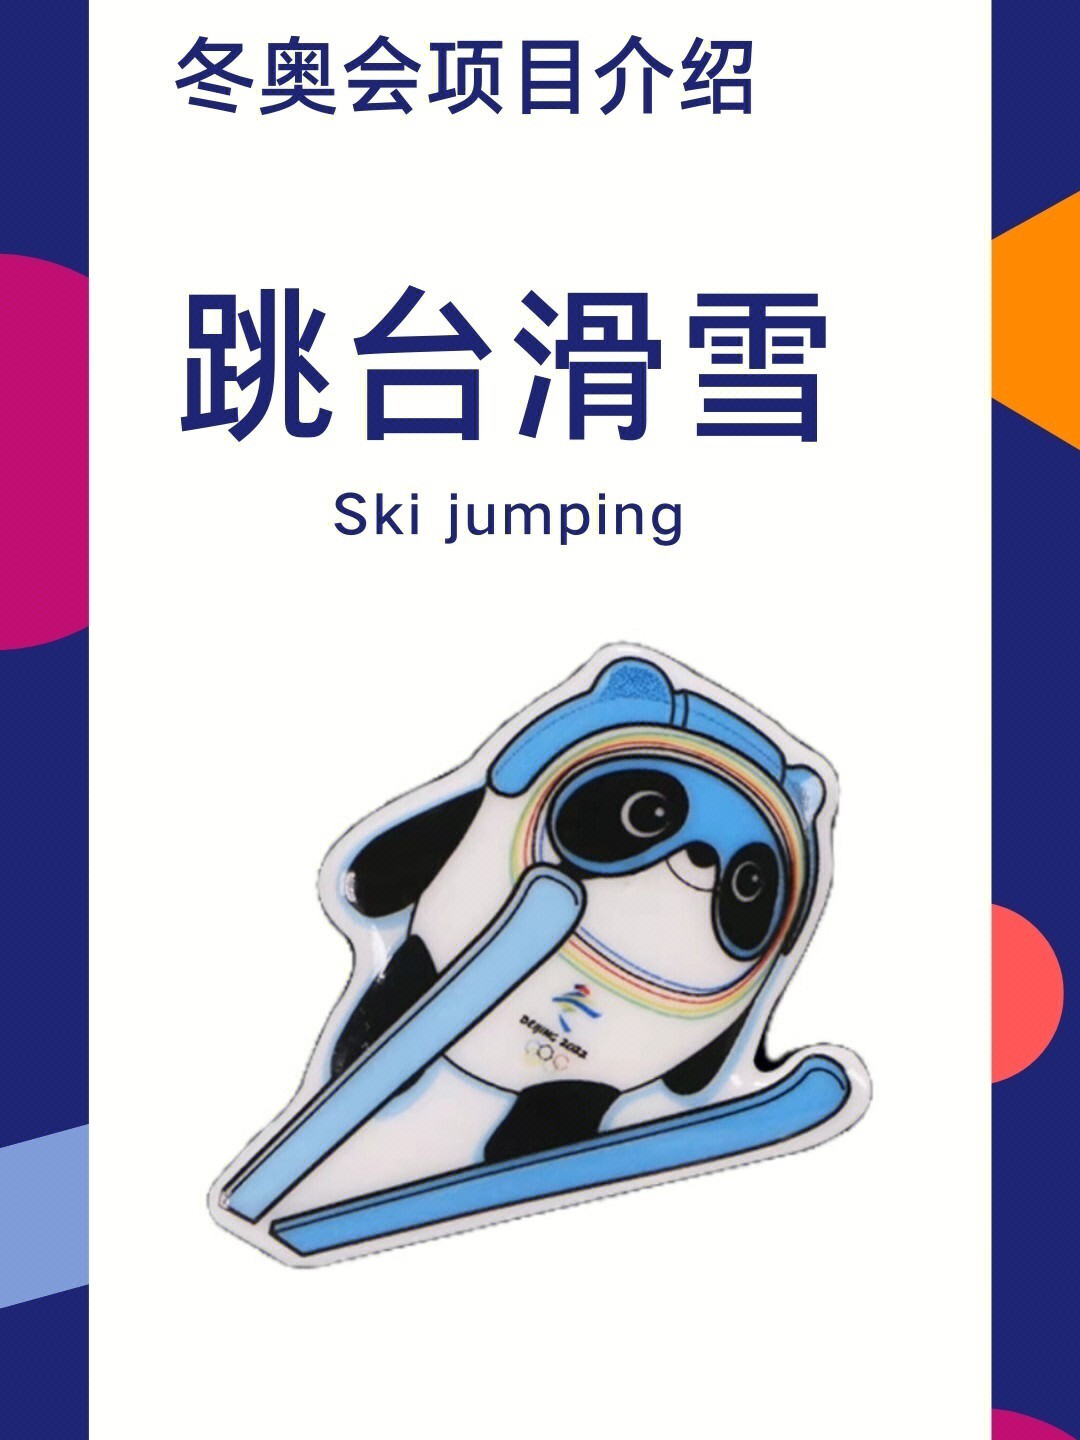 冰墩墩跳台滑雪卡通图片